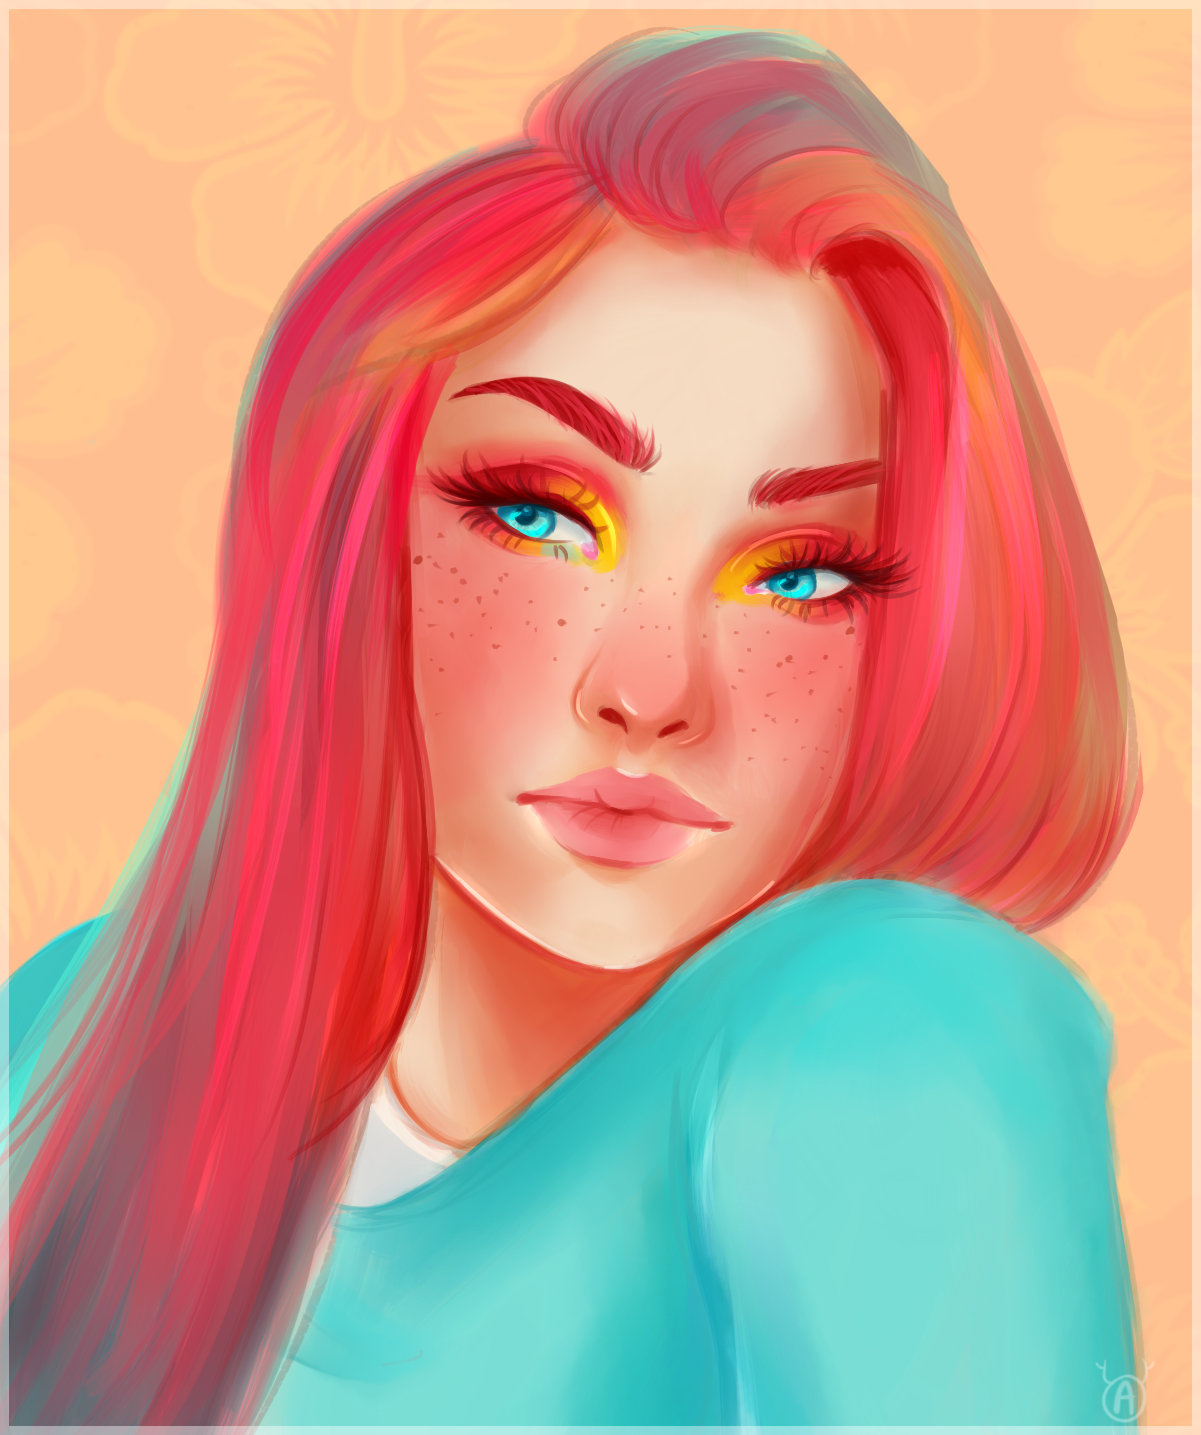 Girl With the Rainbow Hair by Antlurz on DeviantArt